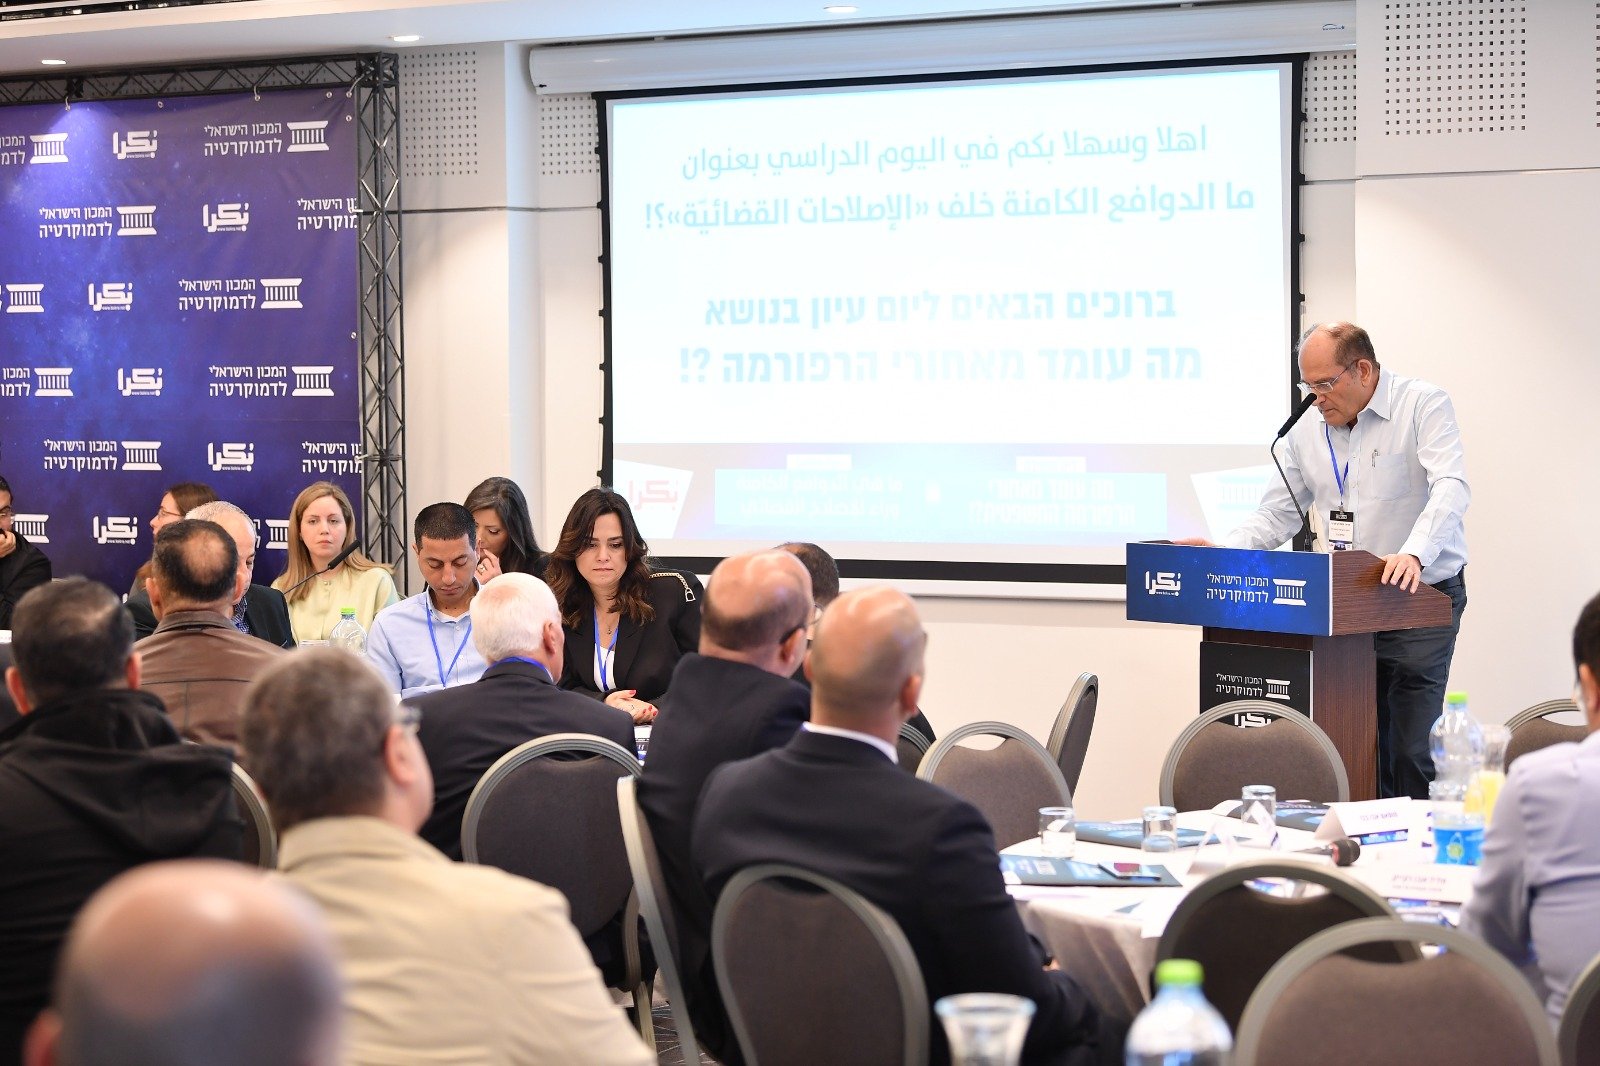 الناصرة: مشاركة واسعة وتصريحات هامة في اليوم الدراسي حول الإصلاح القضائي-24